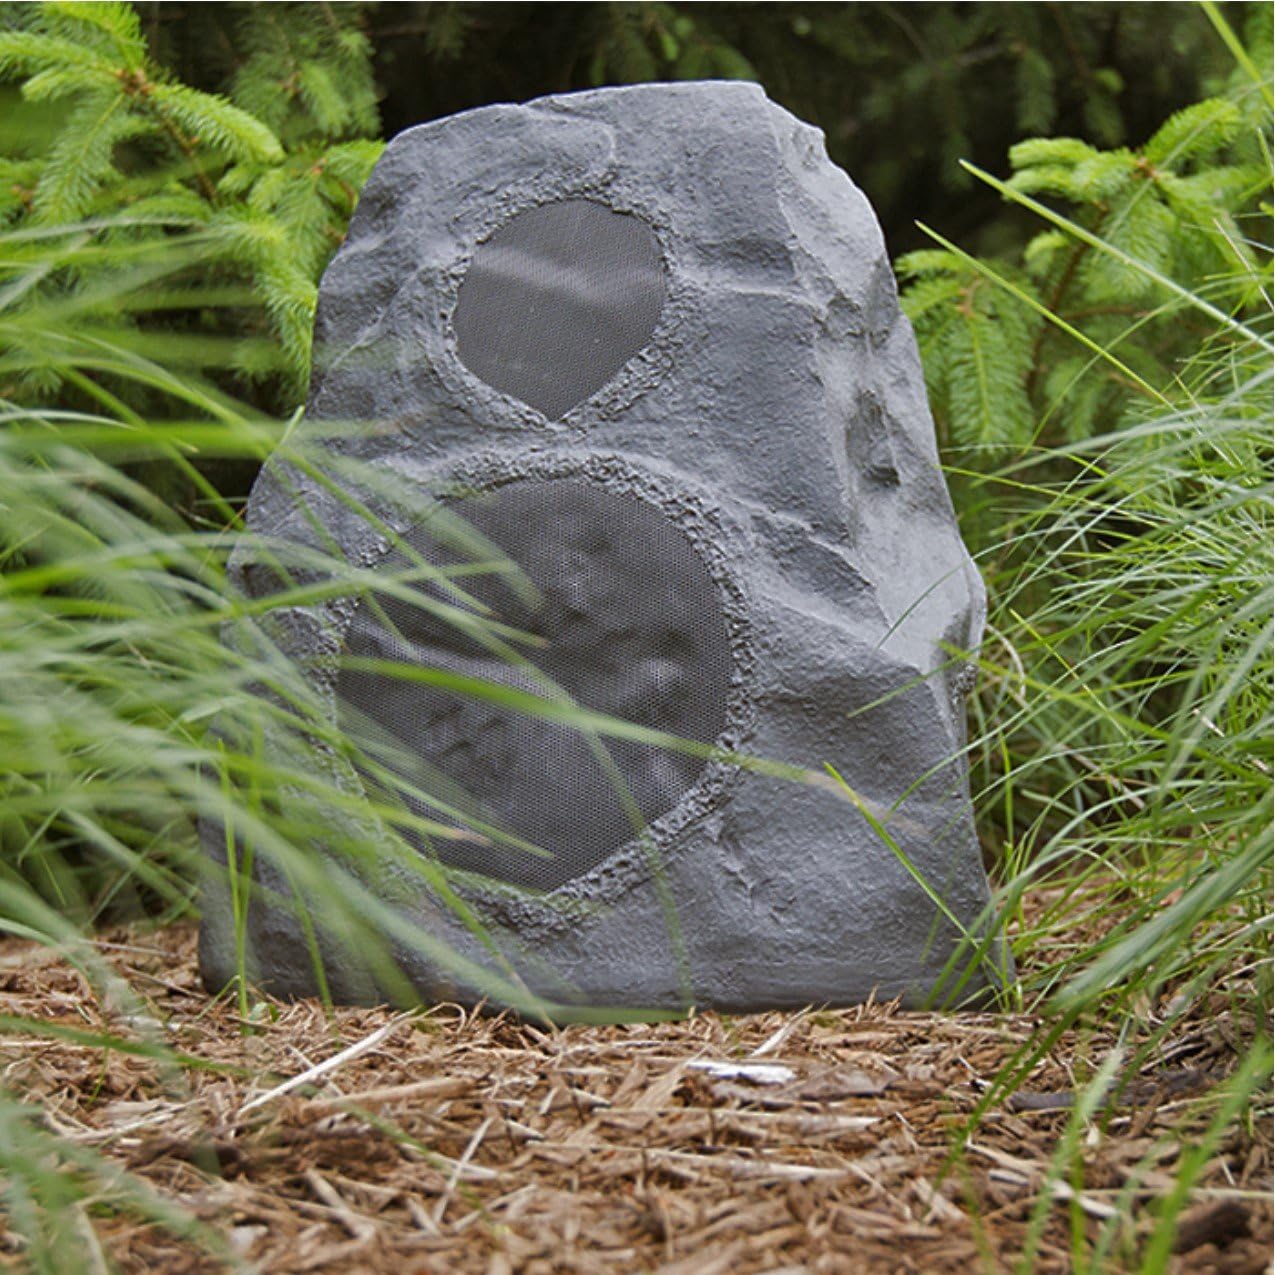 Klipsch AWR-650-SM Indoor/Outdoor Rock Speaker - Granite (Certified Refurbished)